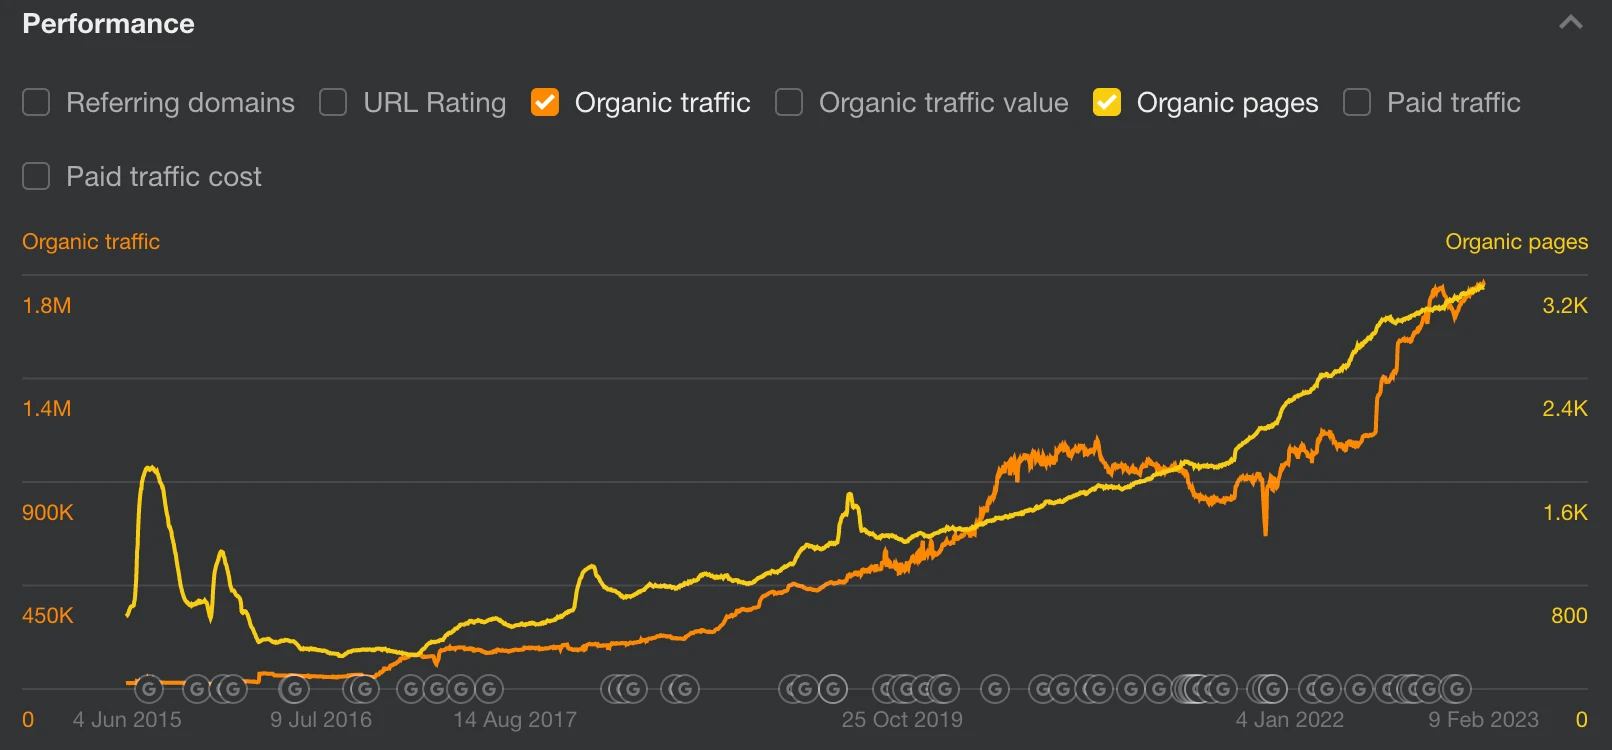 Relazione lineare del traffico organico con le pagine organiche